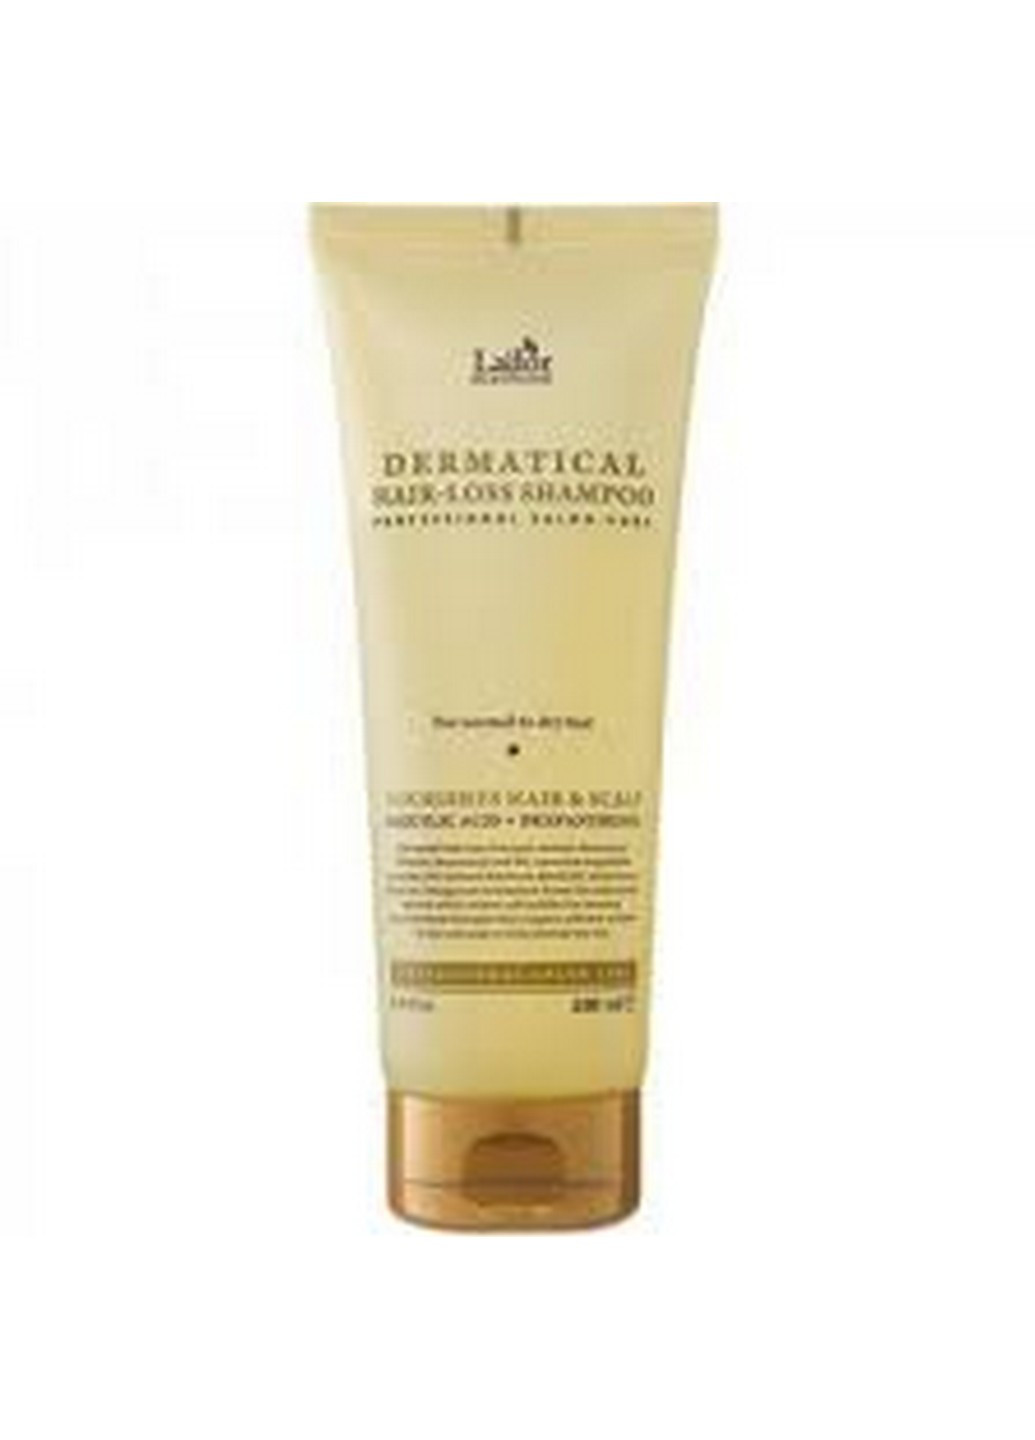 Бессульфатный шампунь Dermatical Hair-Loss Shampoo против выпадения волос, 200 мл LADOR (271531327)